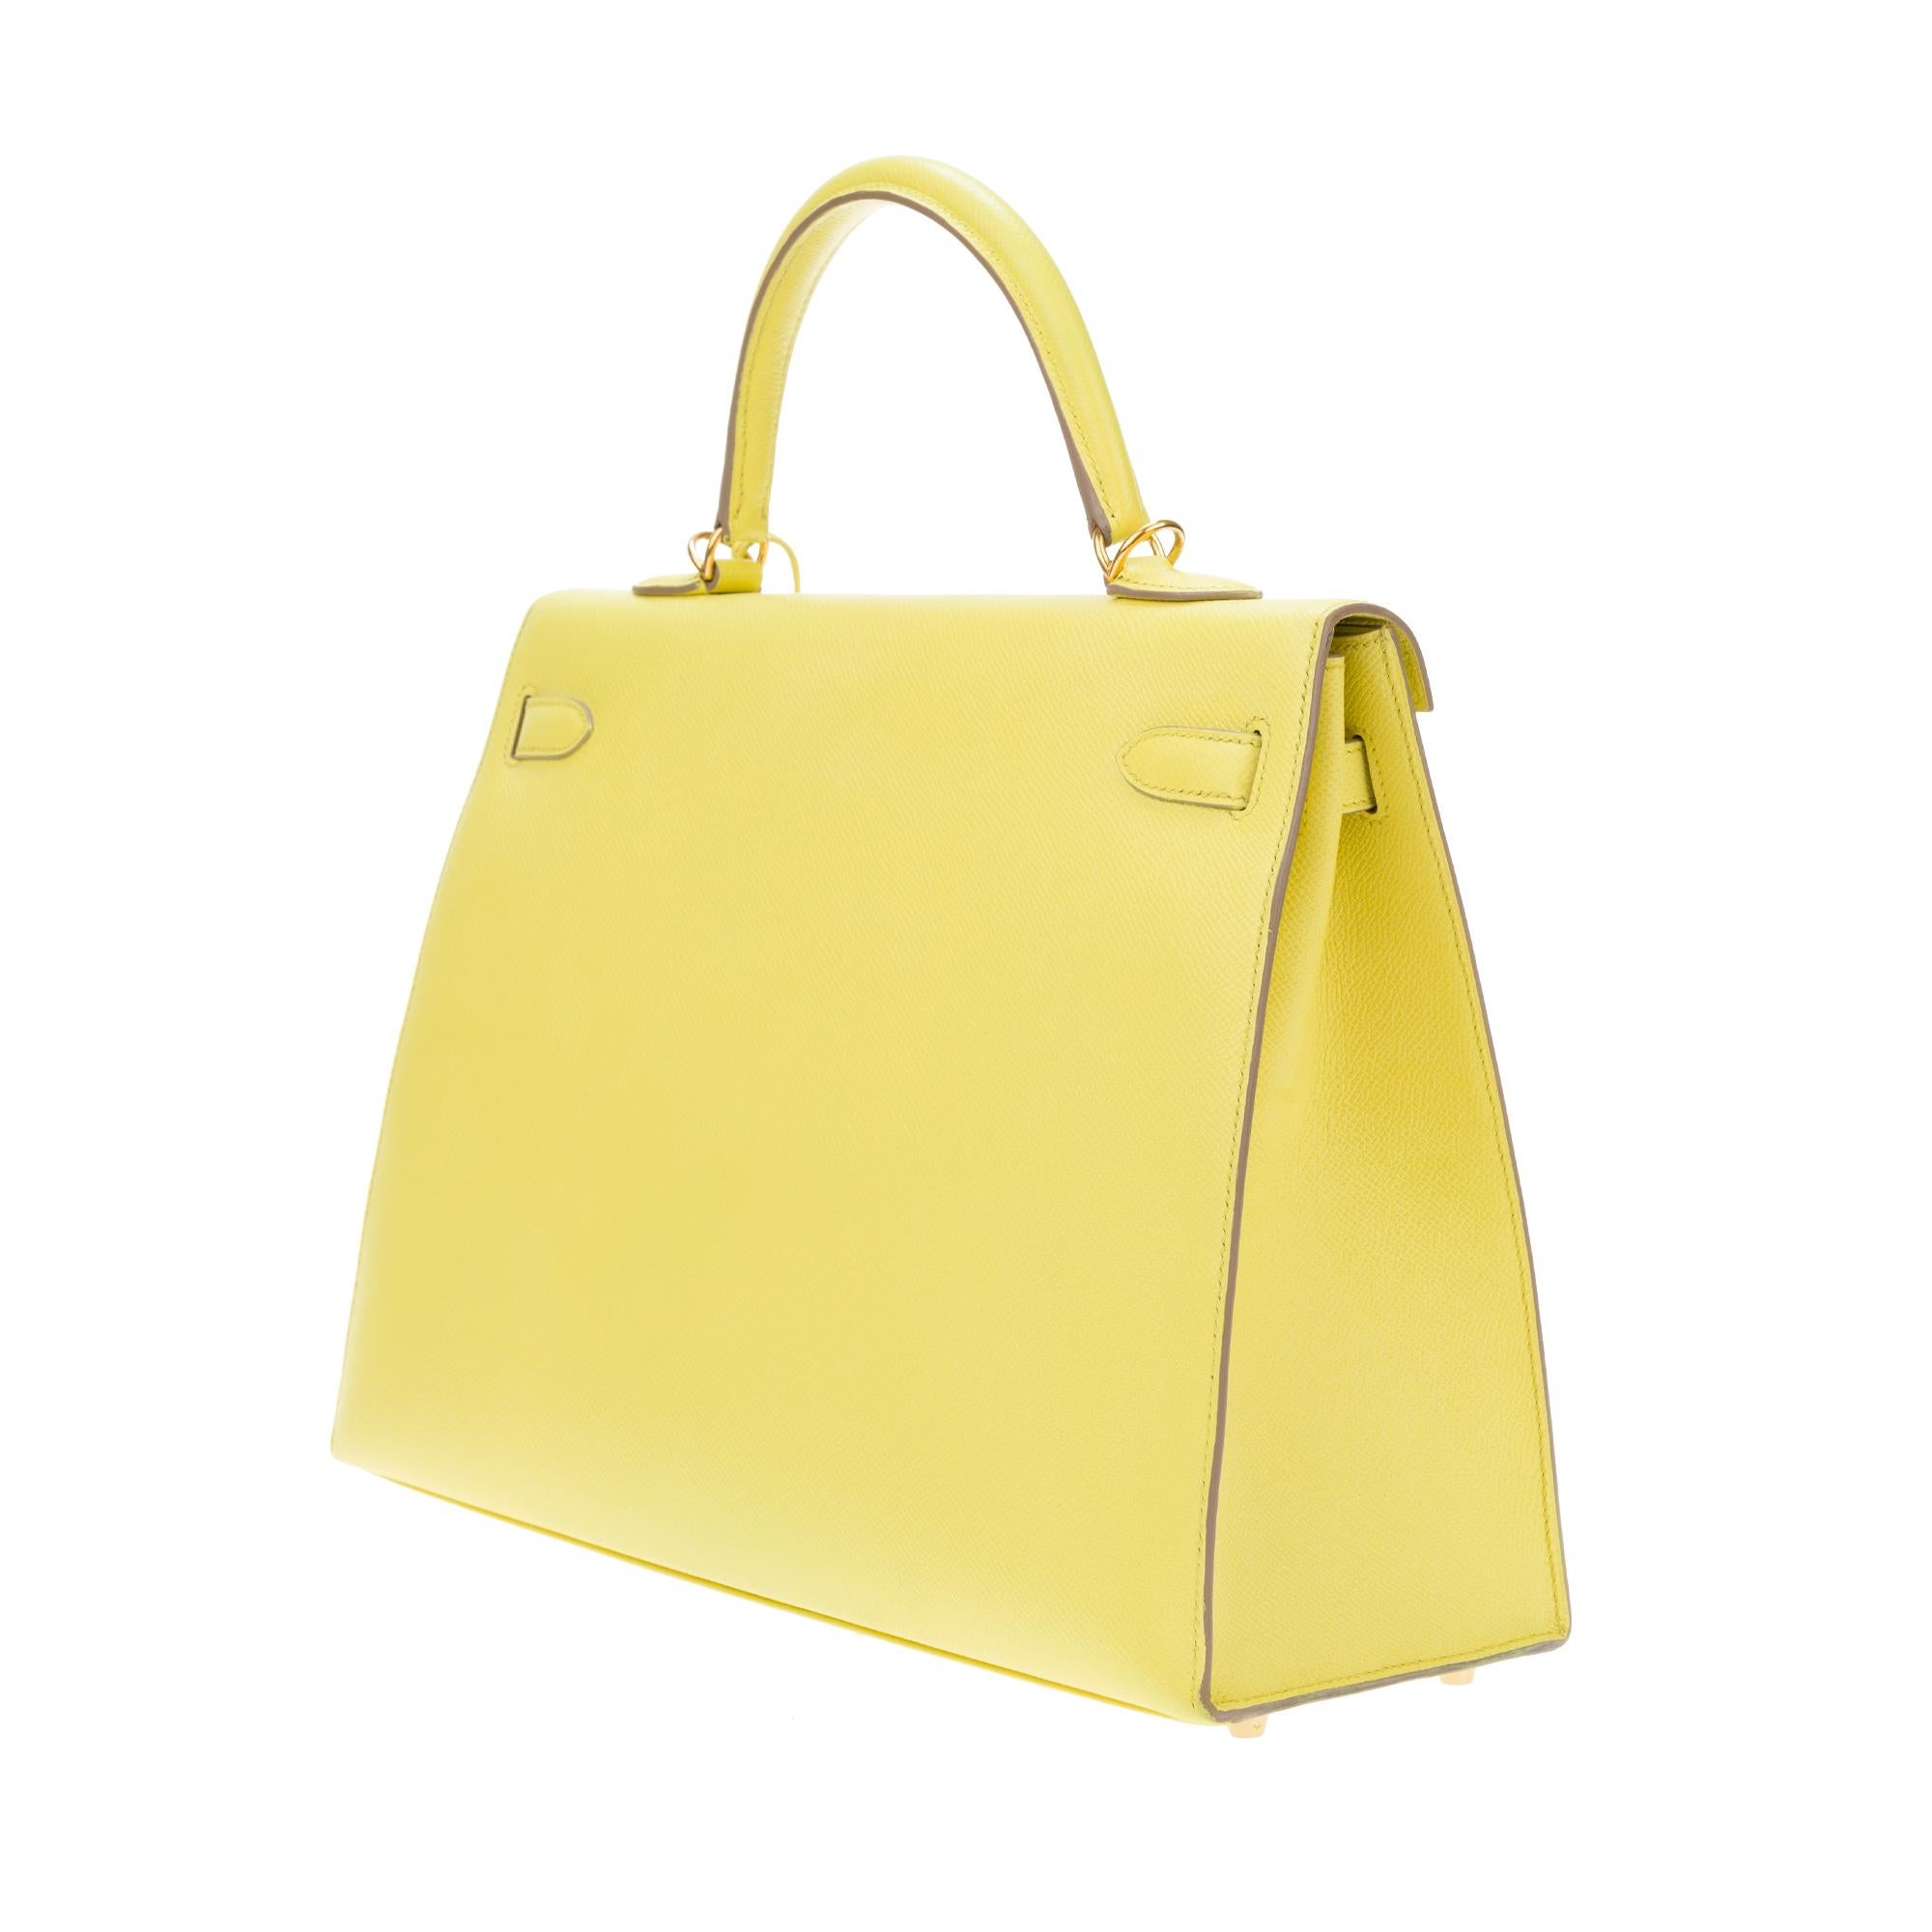 Erstaunlich Hermès Kelly 35 Handtasche mit Gurt in epsom gelb Zitrone Farbe, GHW ! 1